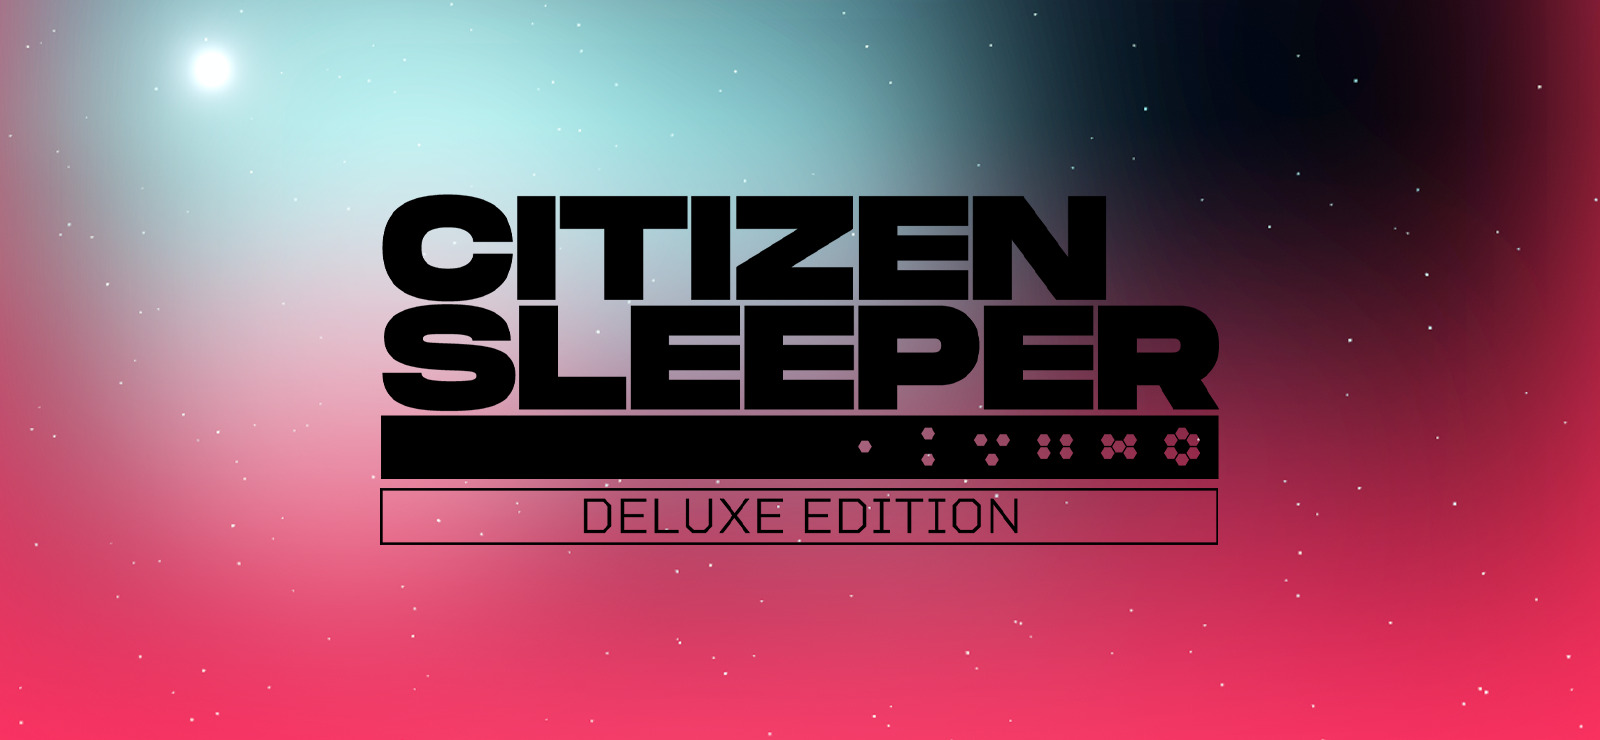 citizen sleeper gog download